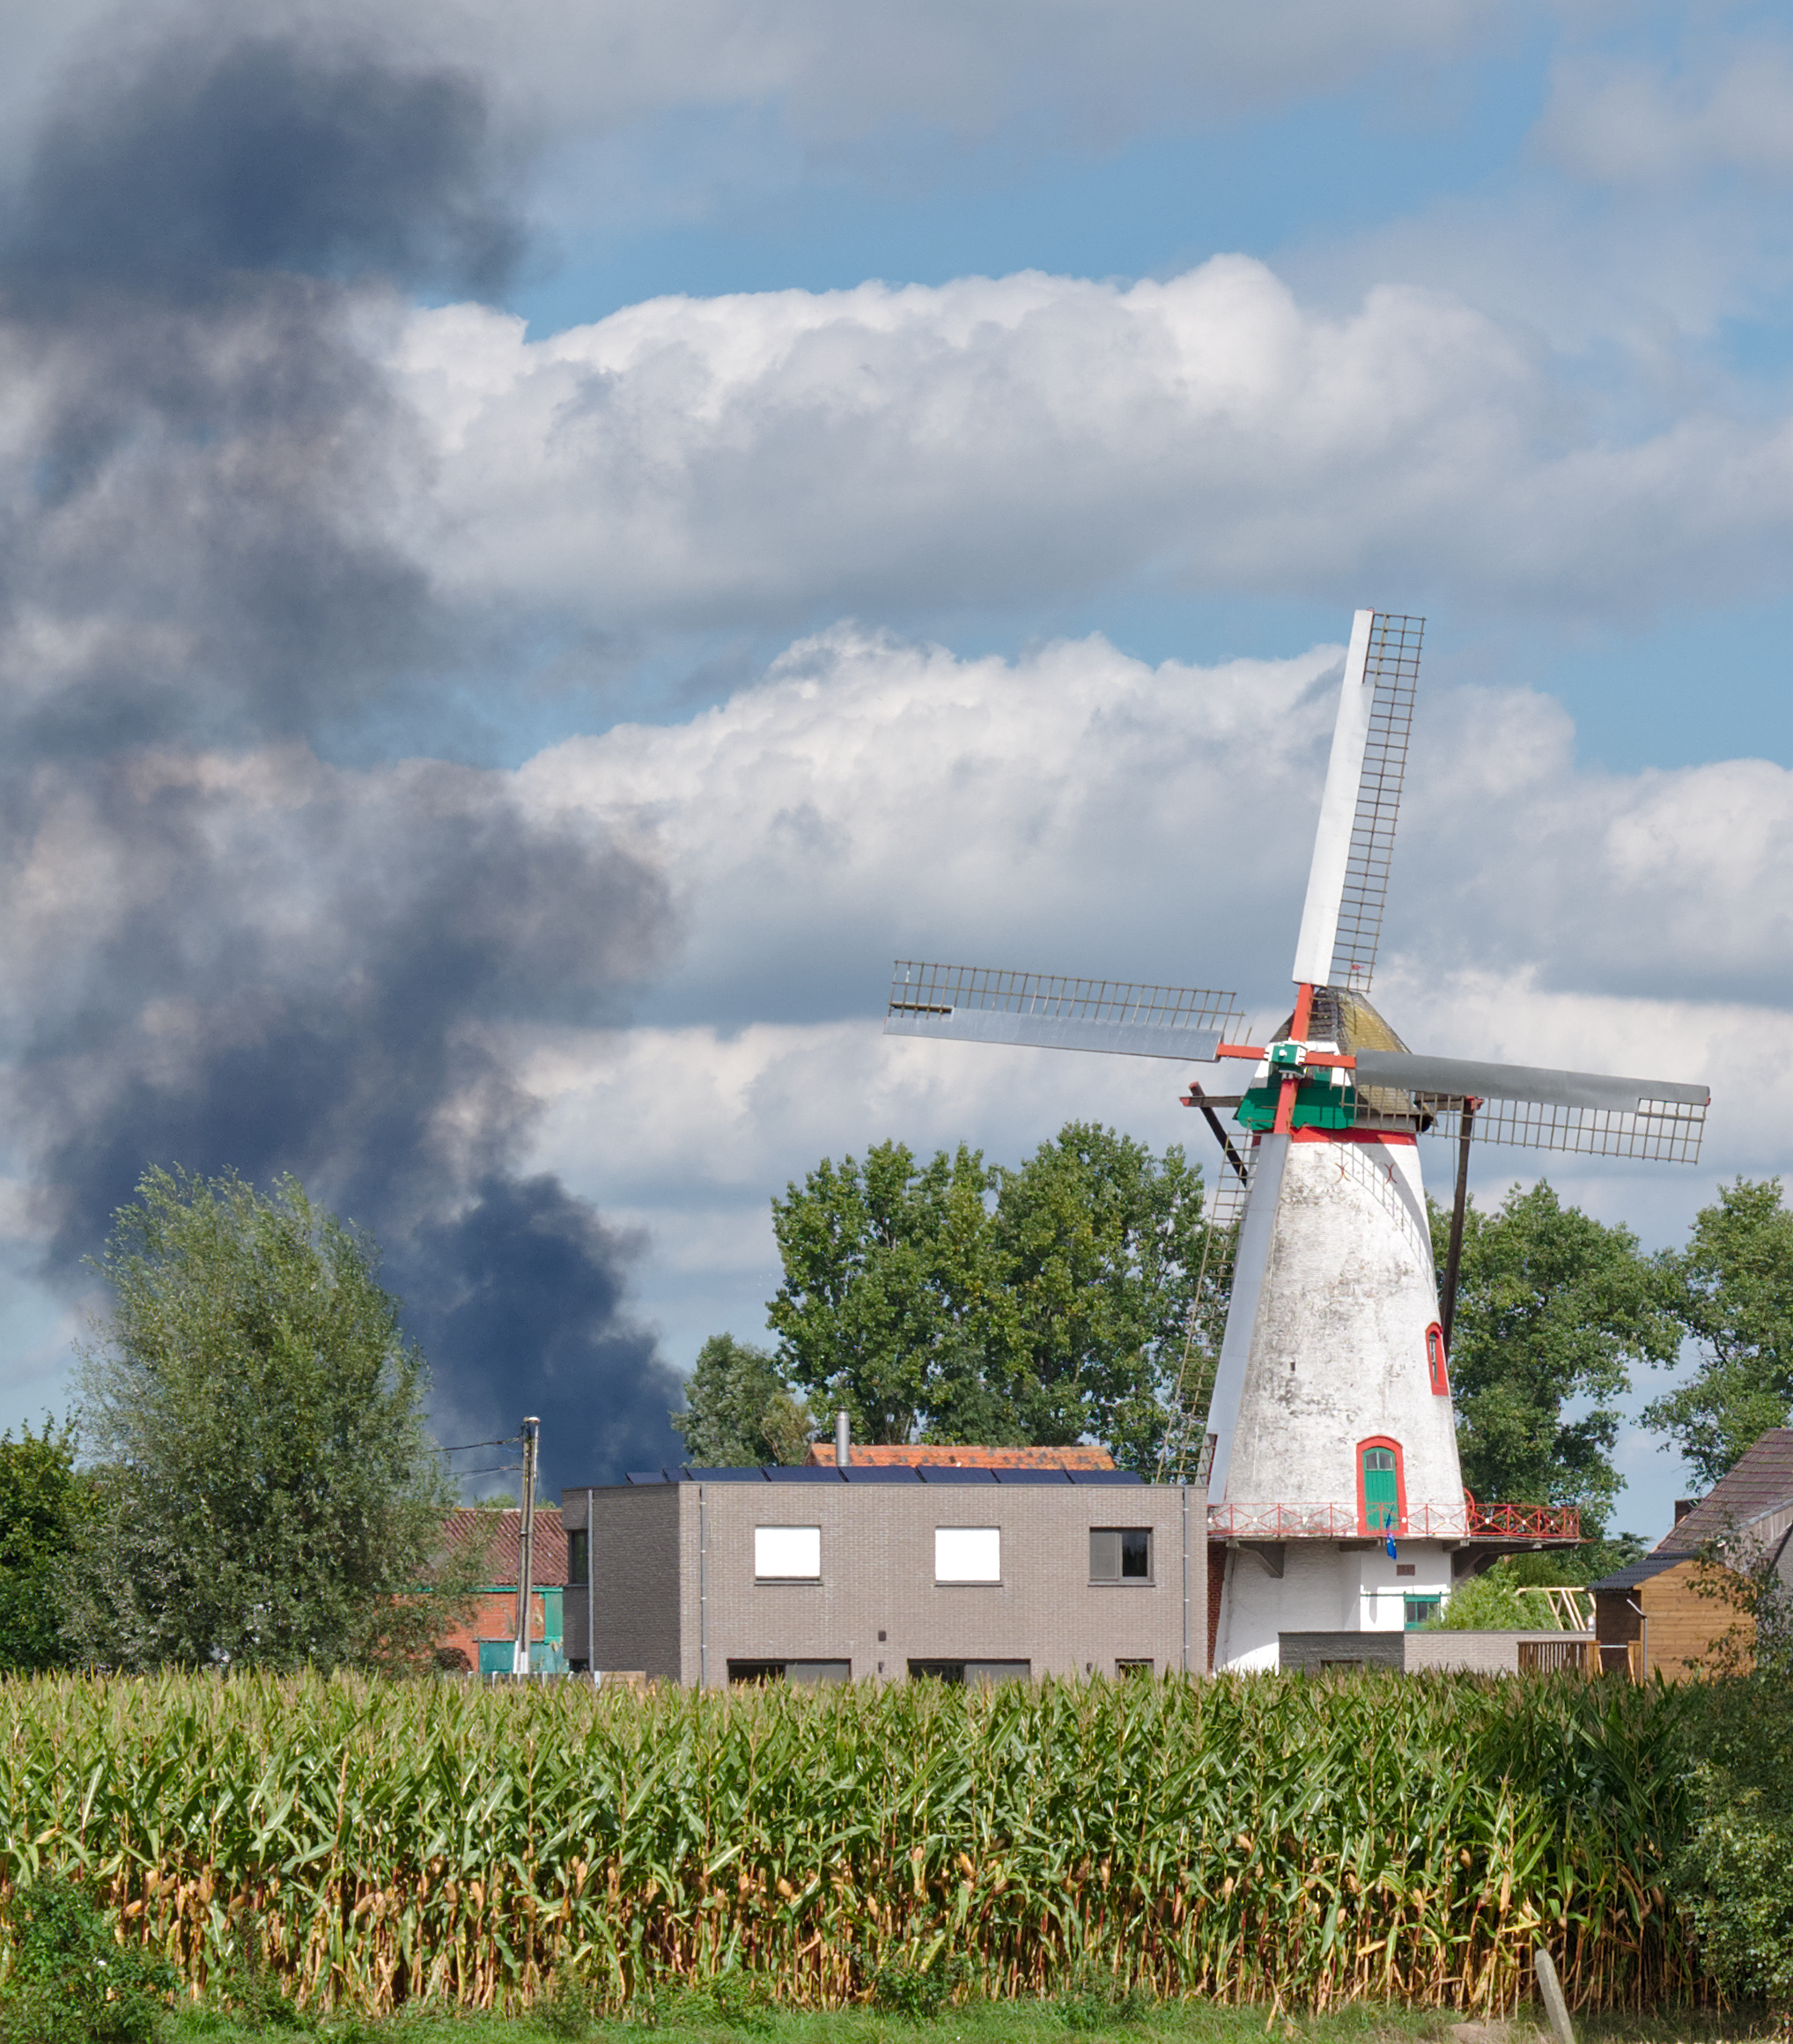 Knokmolen and smoke in Ruiselede, Belgium (DSCF0075)